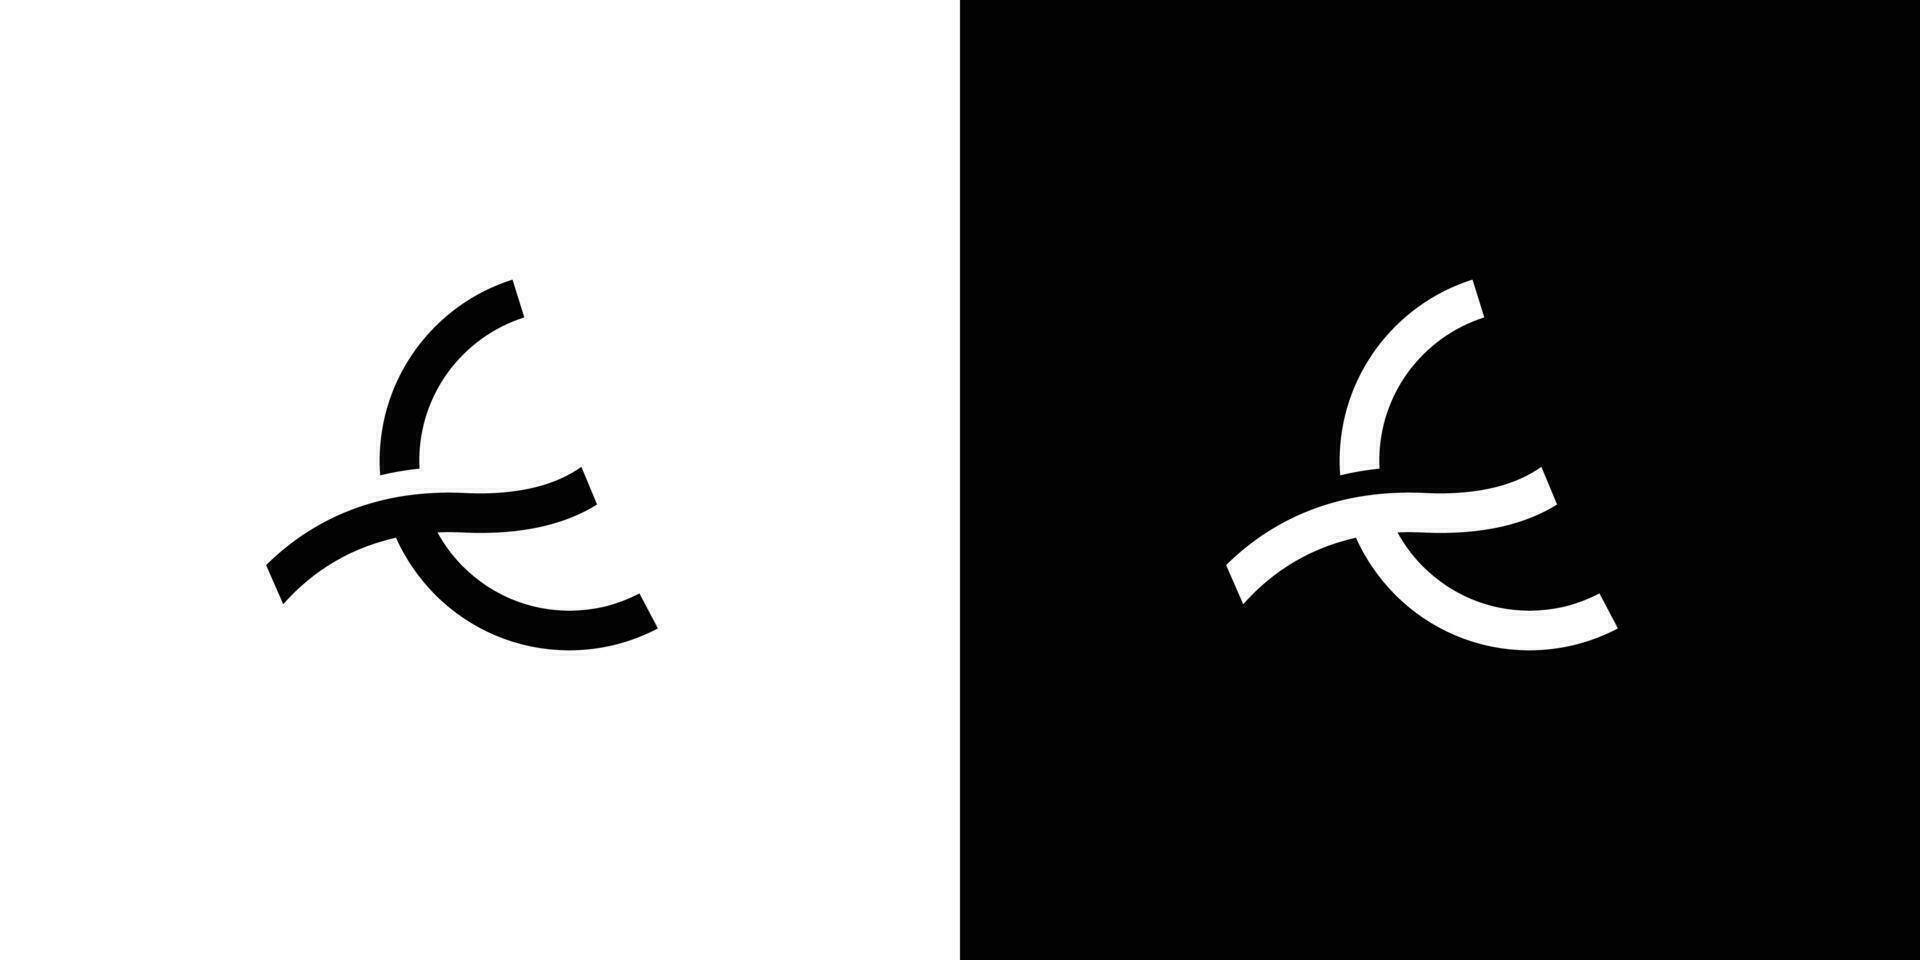 modernes und einzigartiges buchstabe e-initialen-logo-design vektor